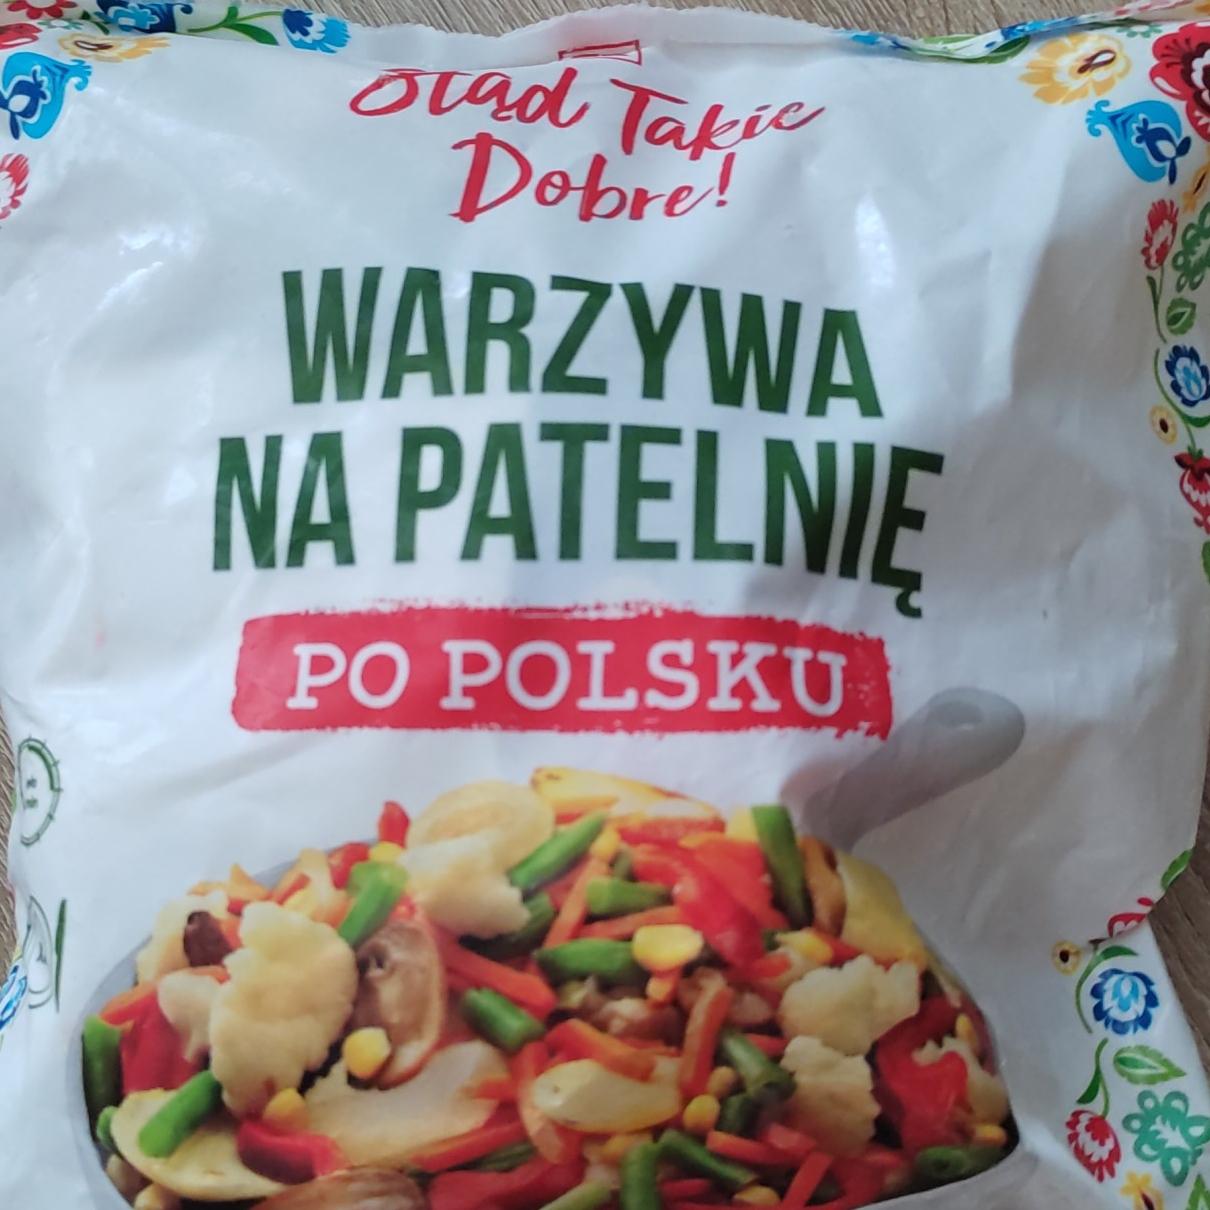 Zdjęcia - Warzywa na patelnię po polsku K-Stąd Takie Dobre